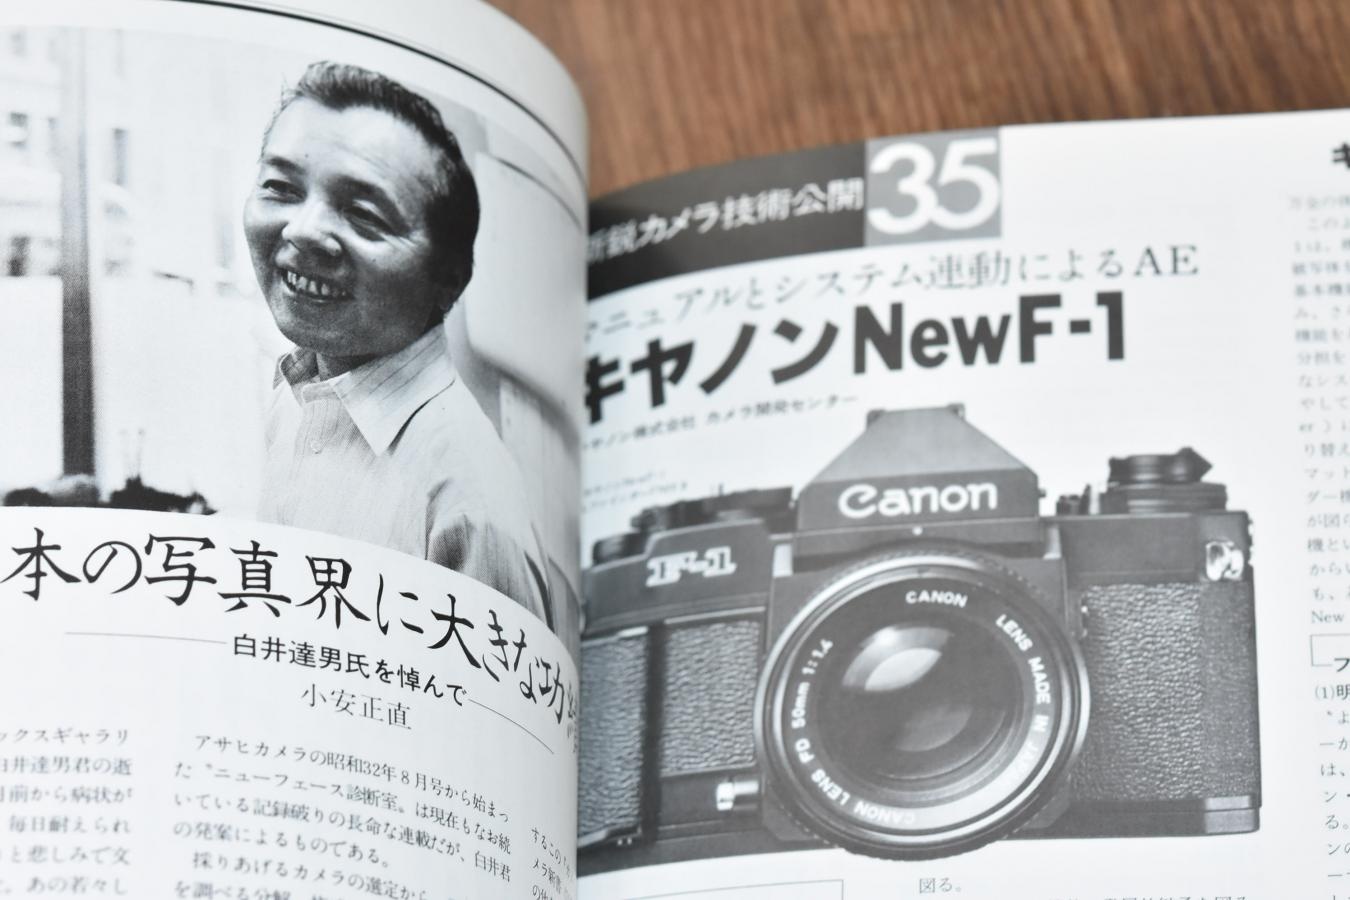 【絶版書籍】 朝日ソノラマ カメラレビュー No20 1981年11月 【特集:シャープな写真の作り方】